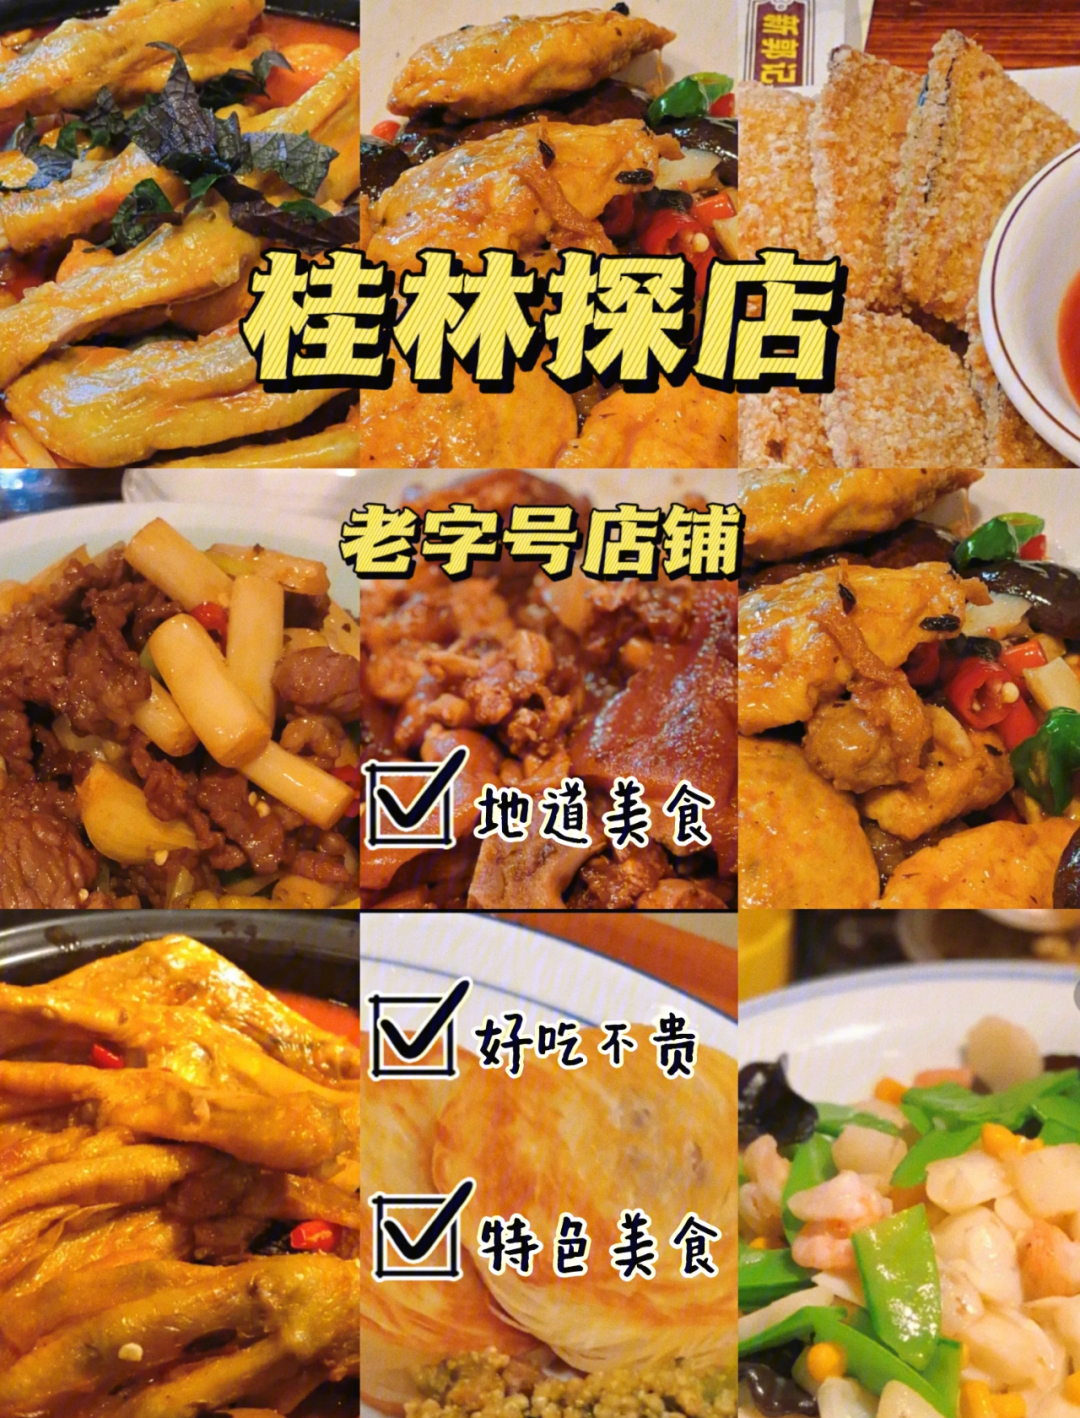 桂林美食排名图片